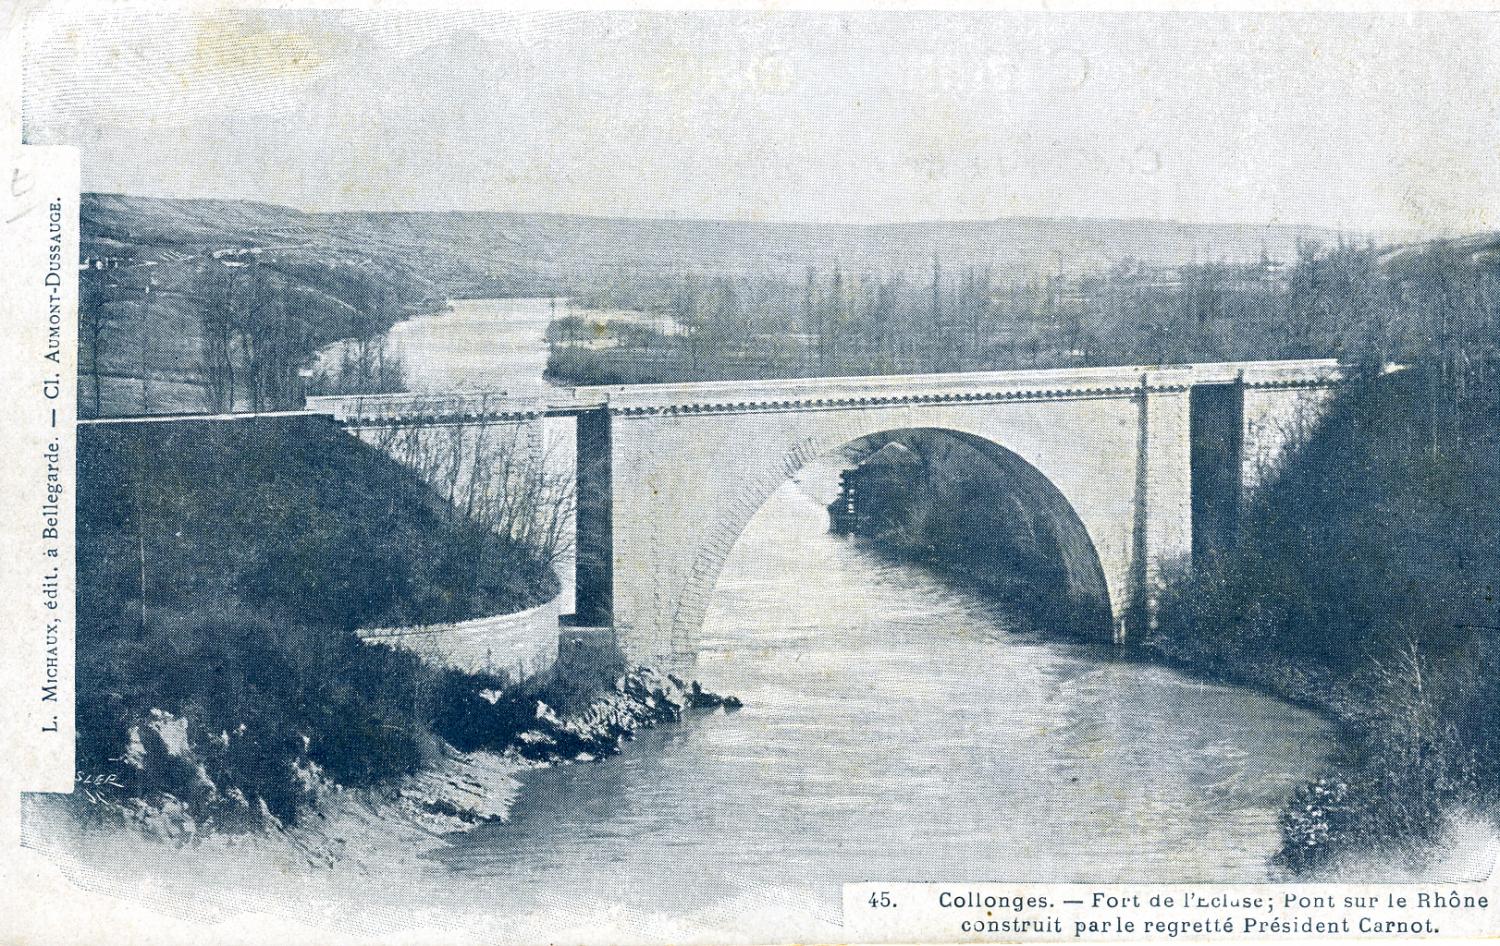 Collonges. - Fort de l'Ecluse ; Pont sur le Rhône construit par le regretté Président Carnot.